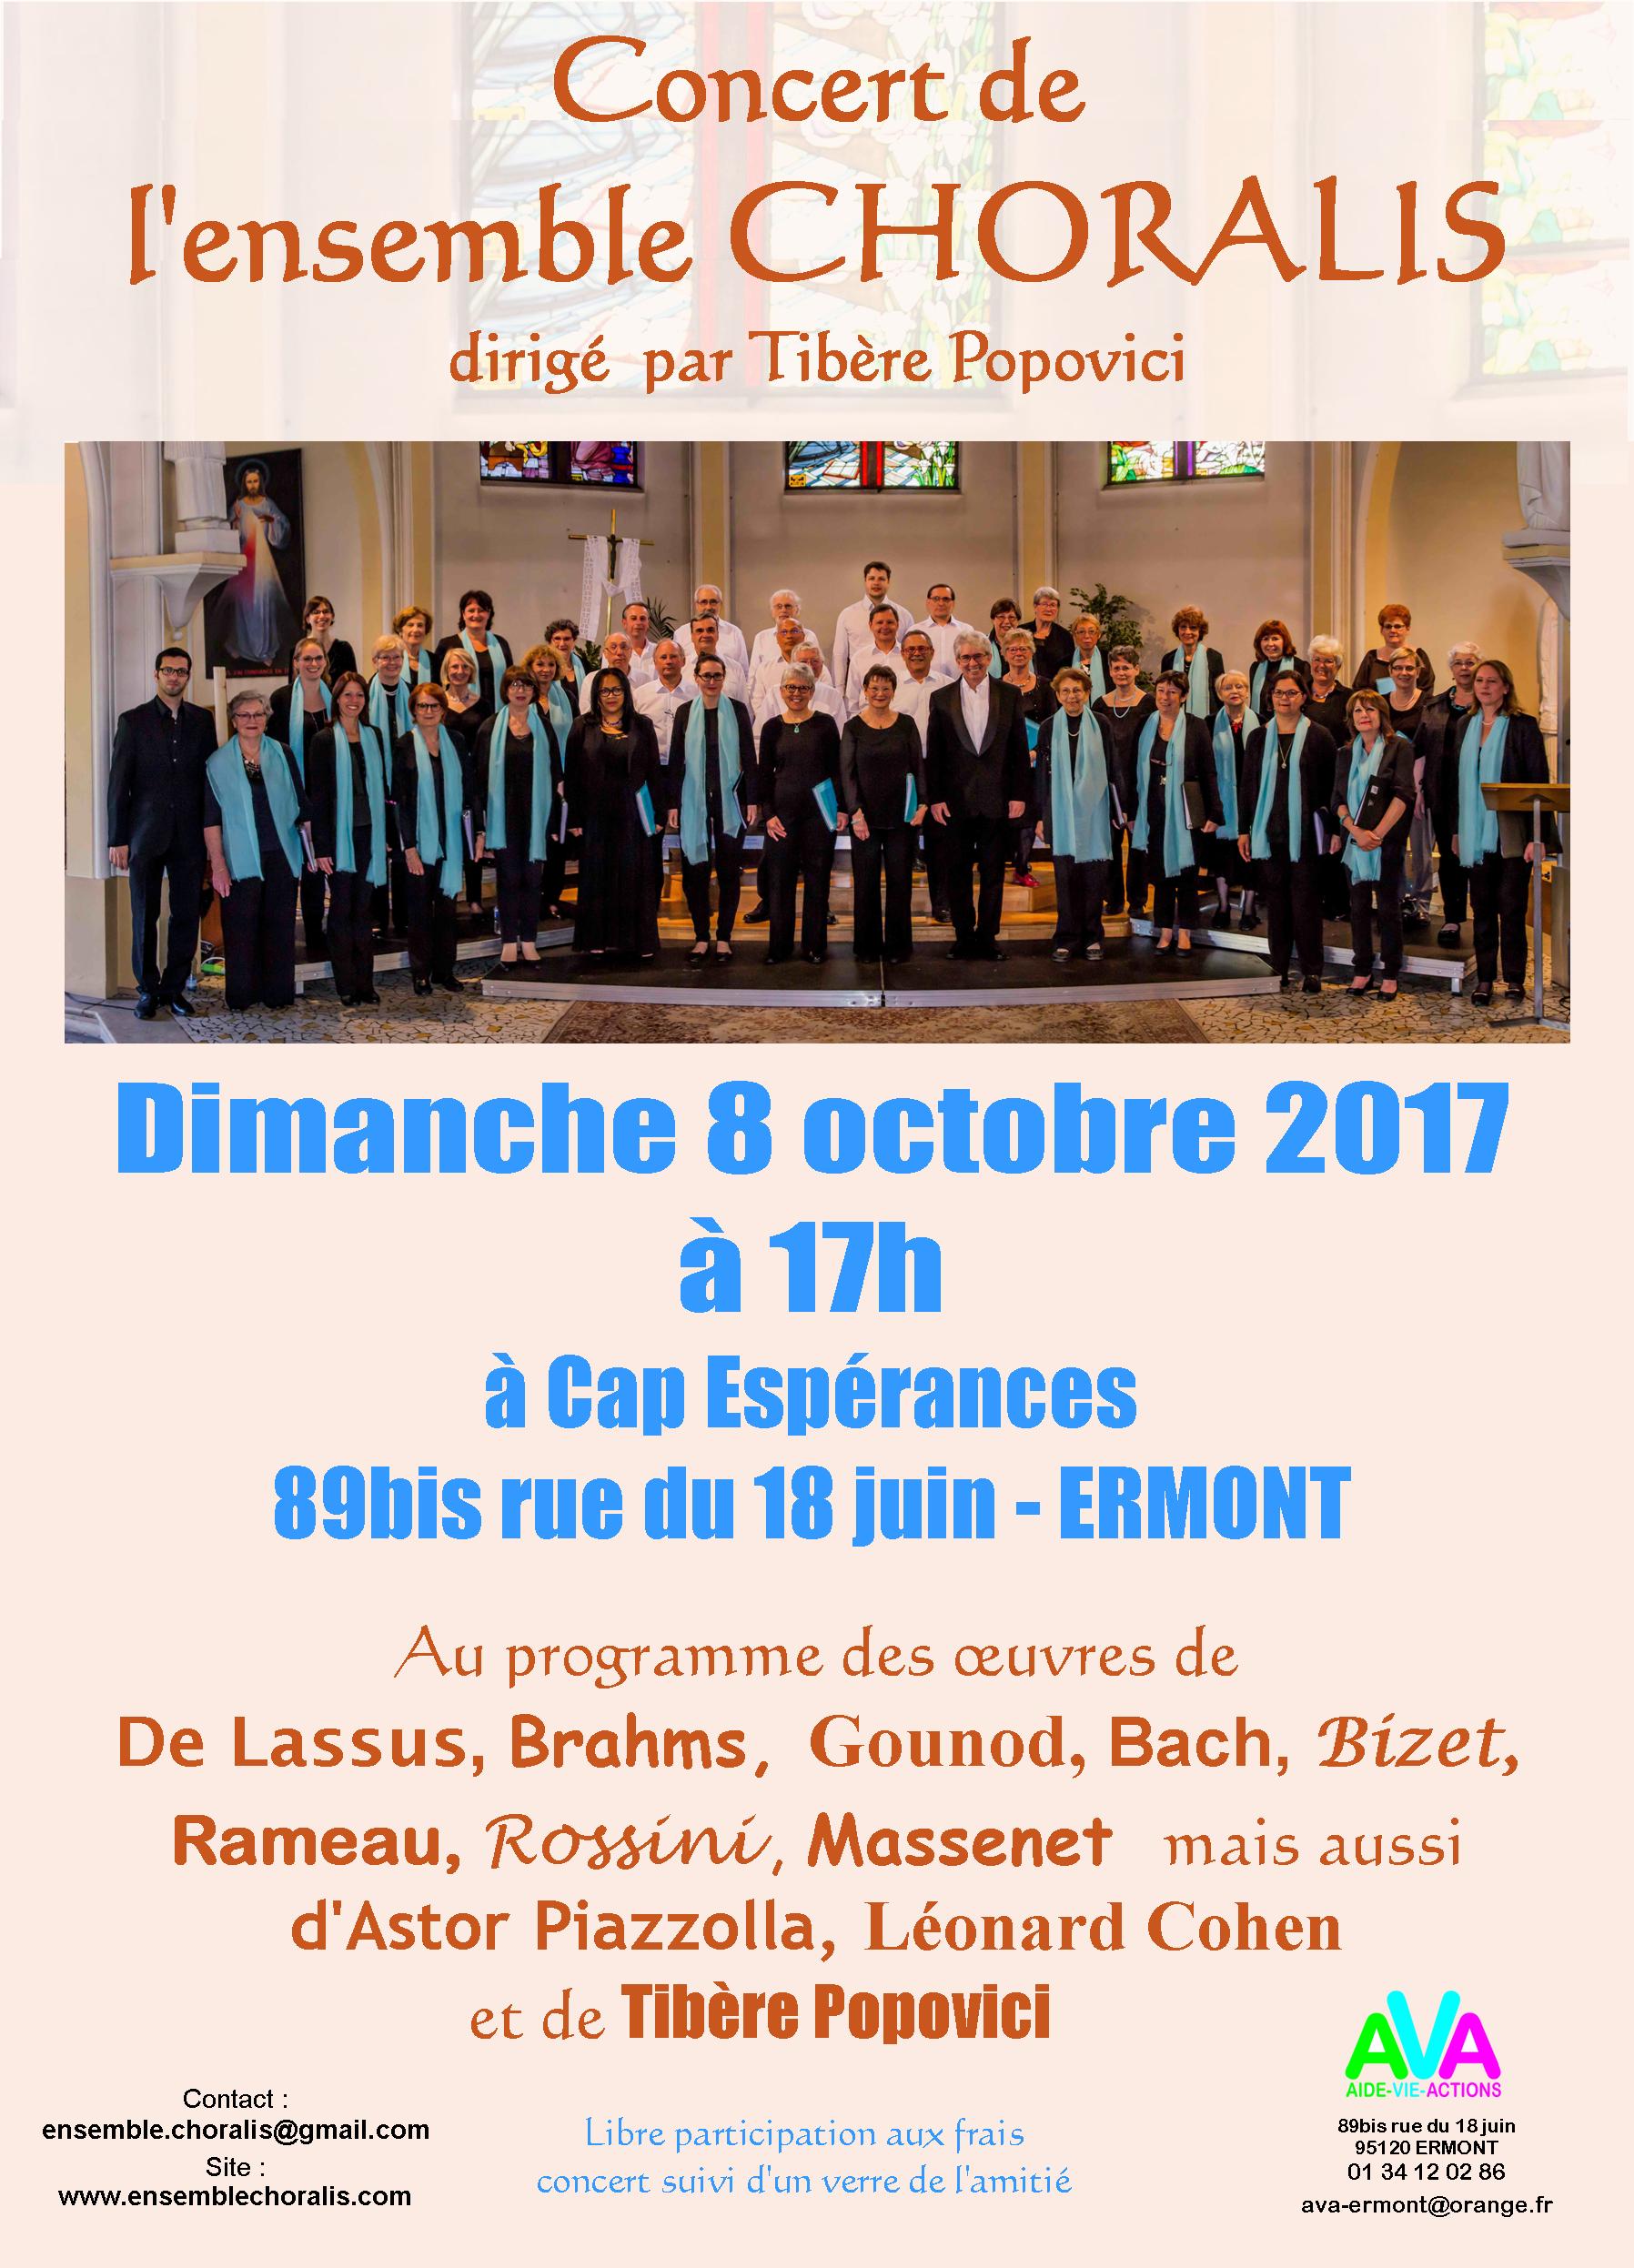 Concert de Choralis le 8 octobre 2017